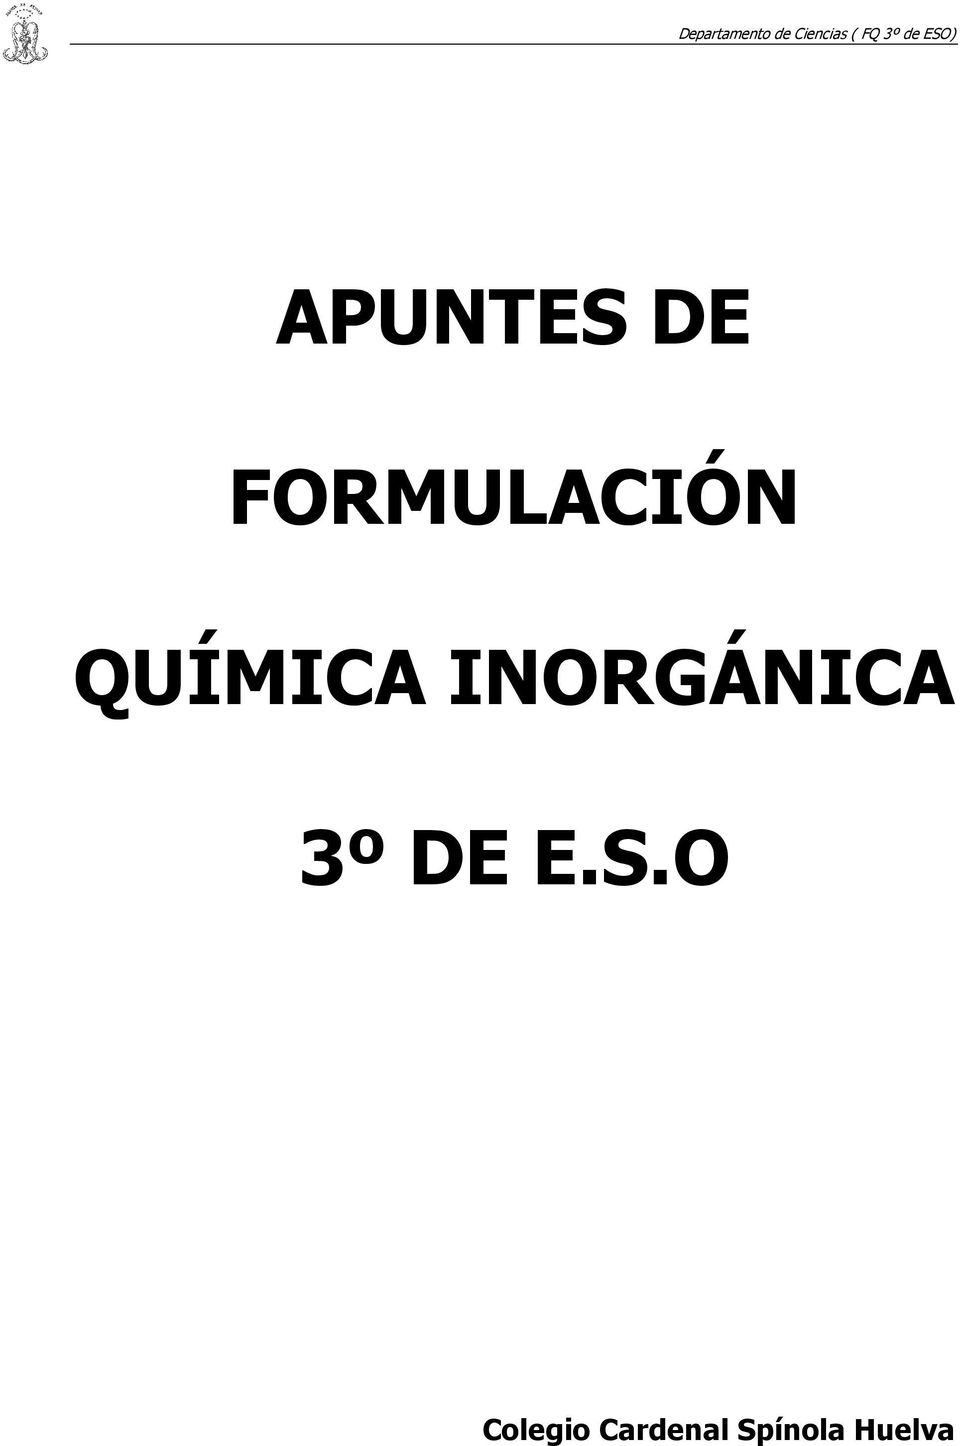 INORGÁNICA 3º DE E.S.